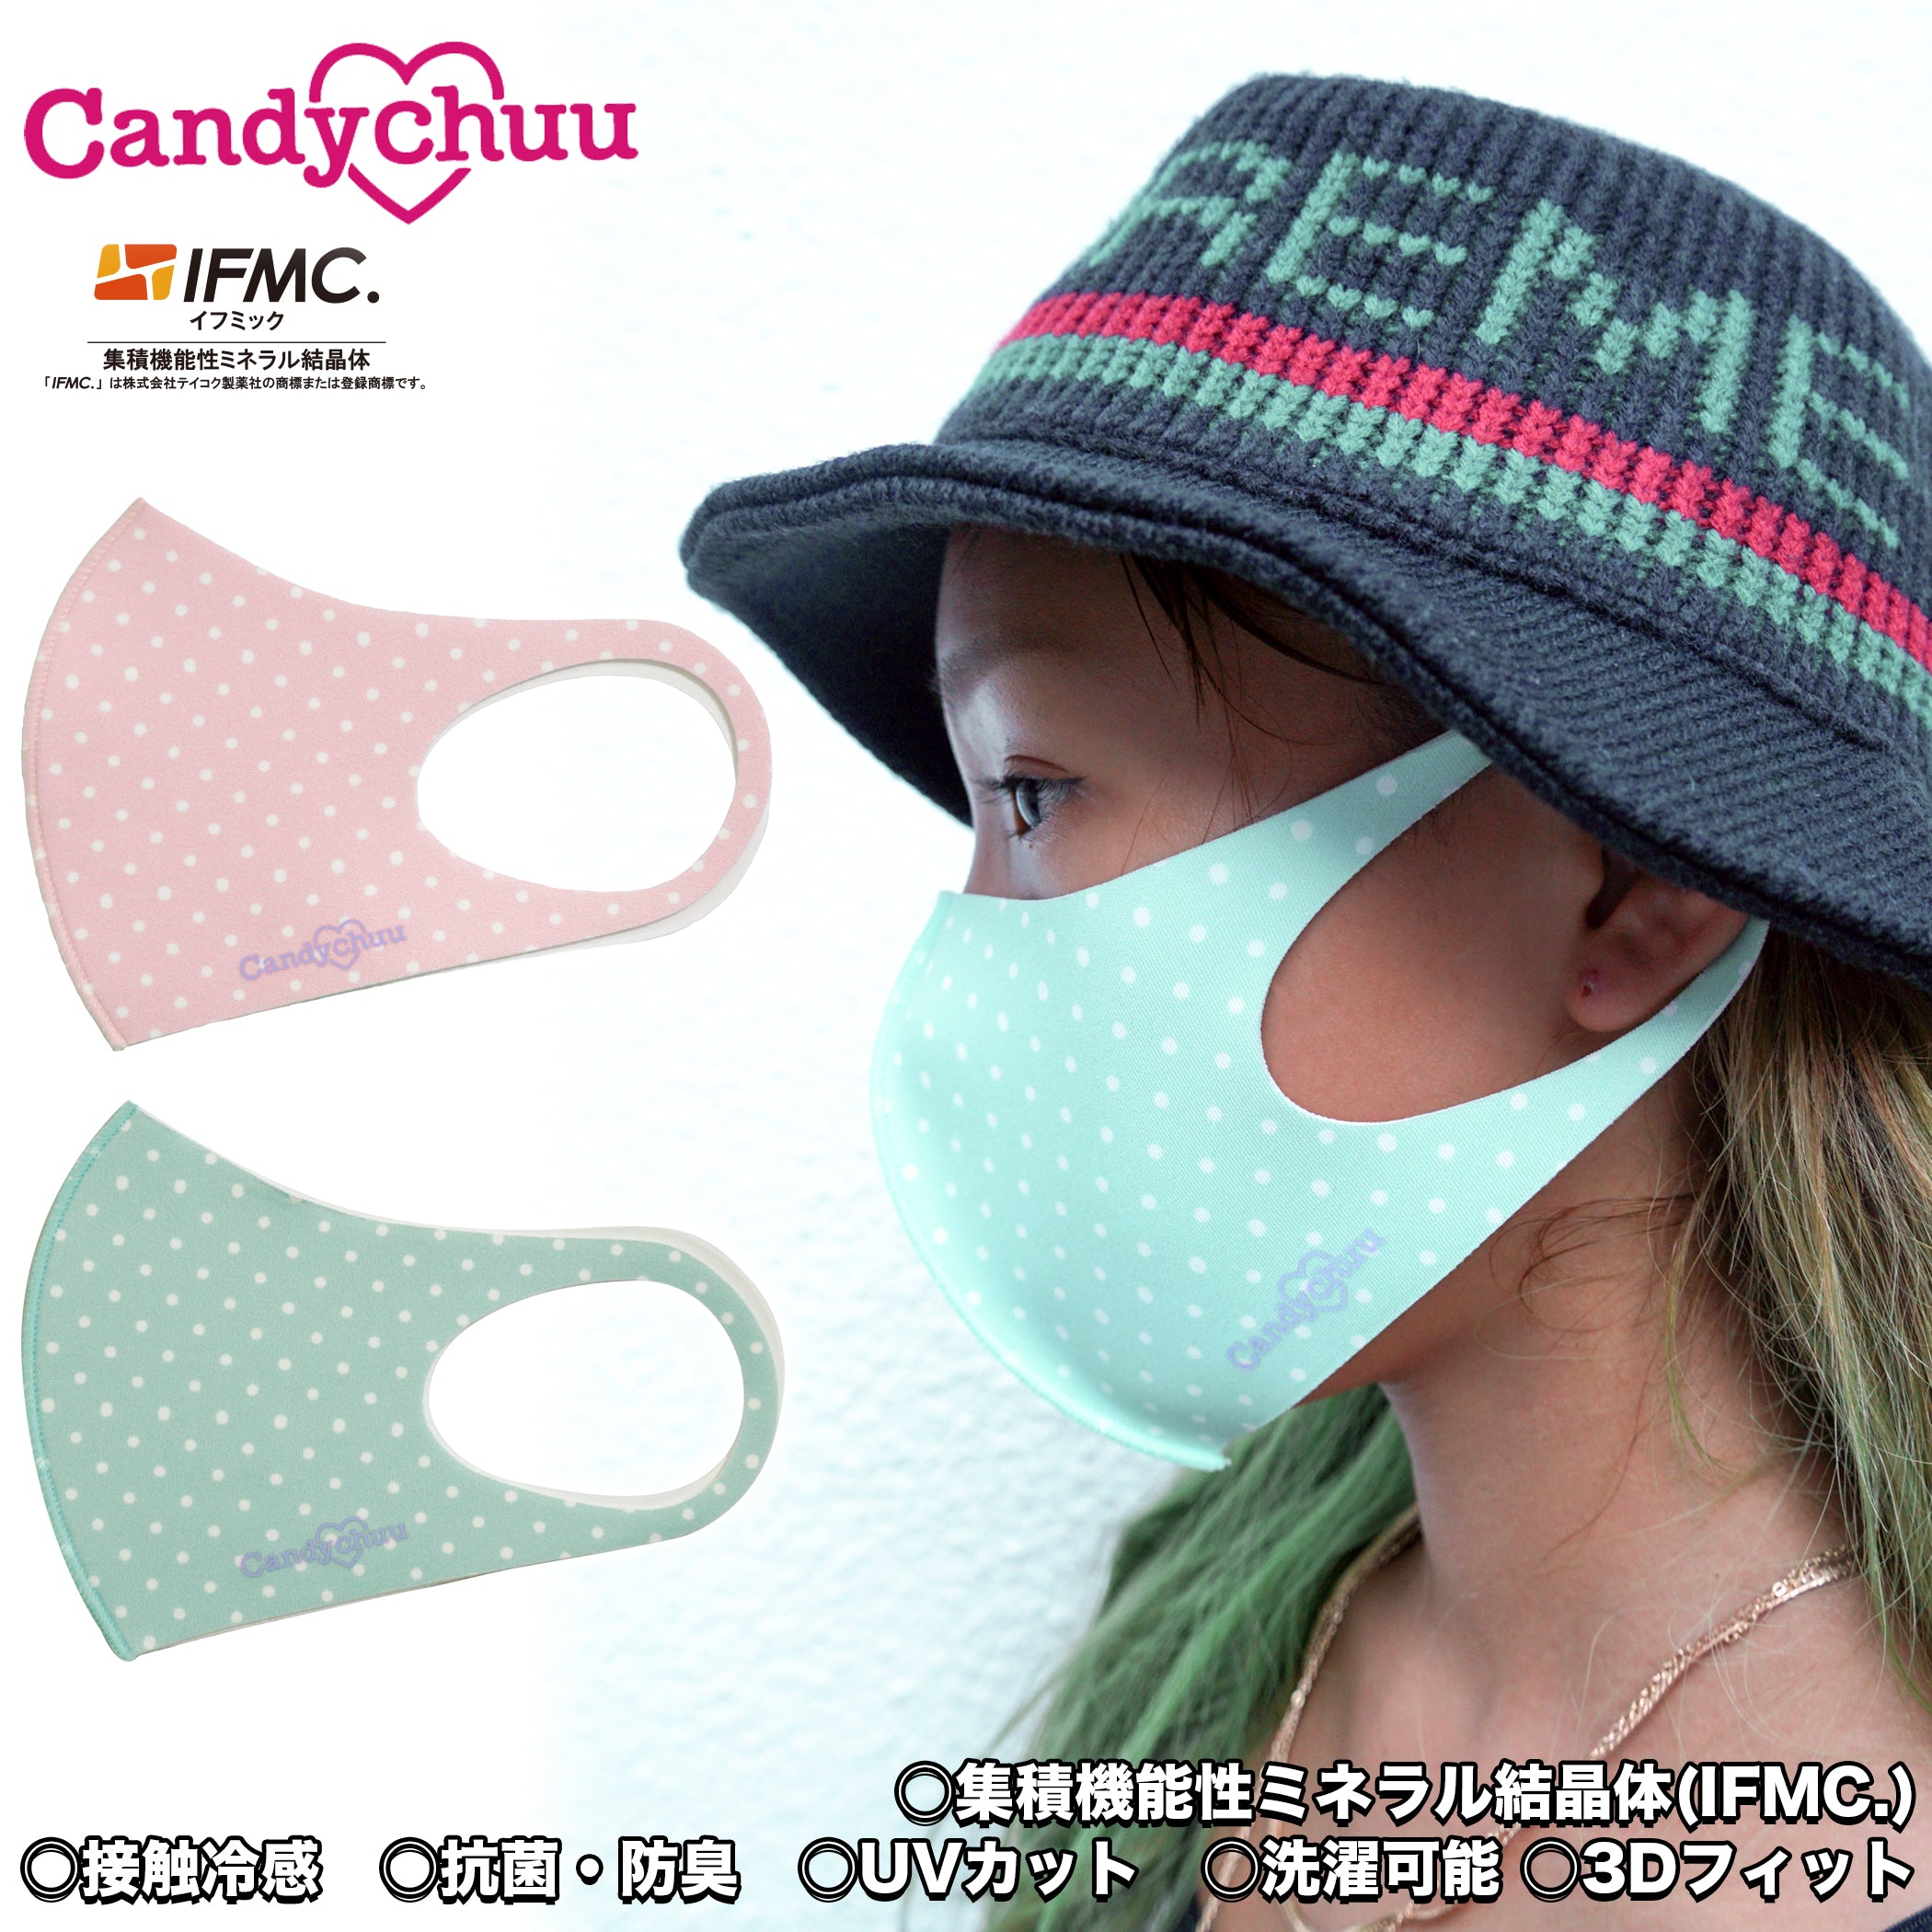 Candychuu  ドット柄 ロゴ マスク (200586)